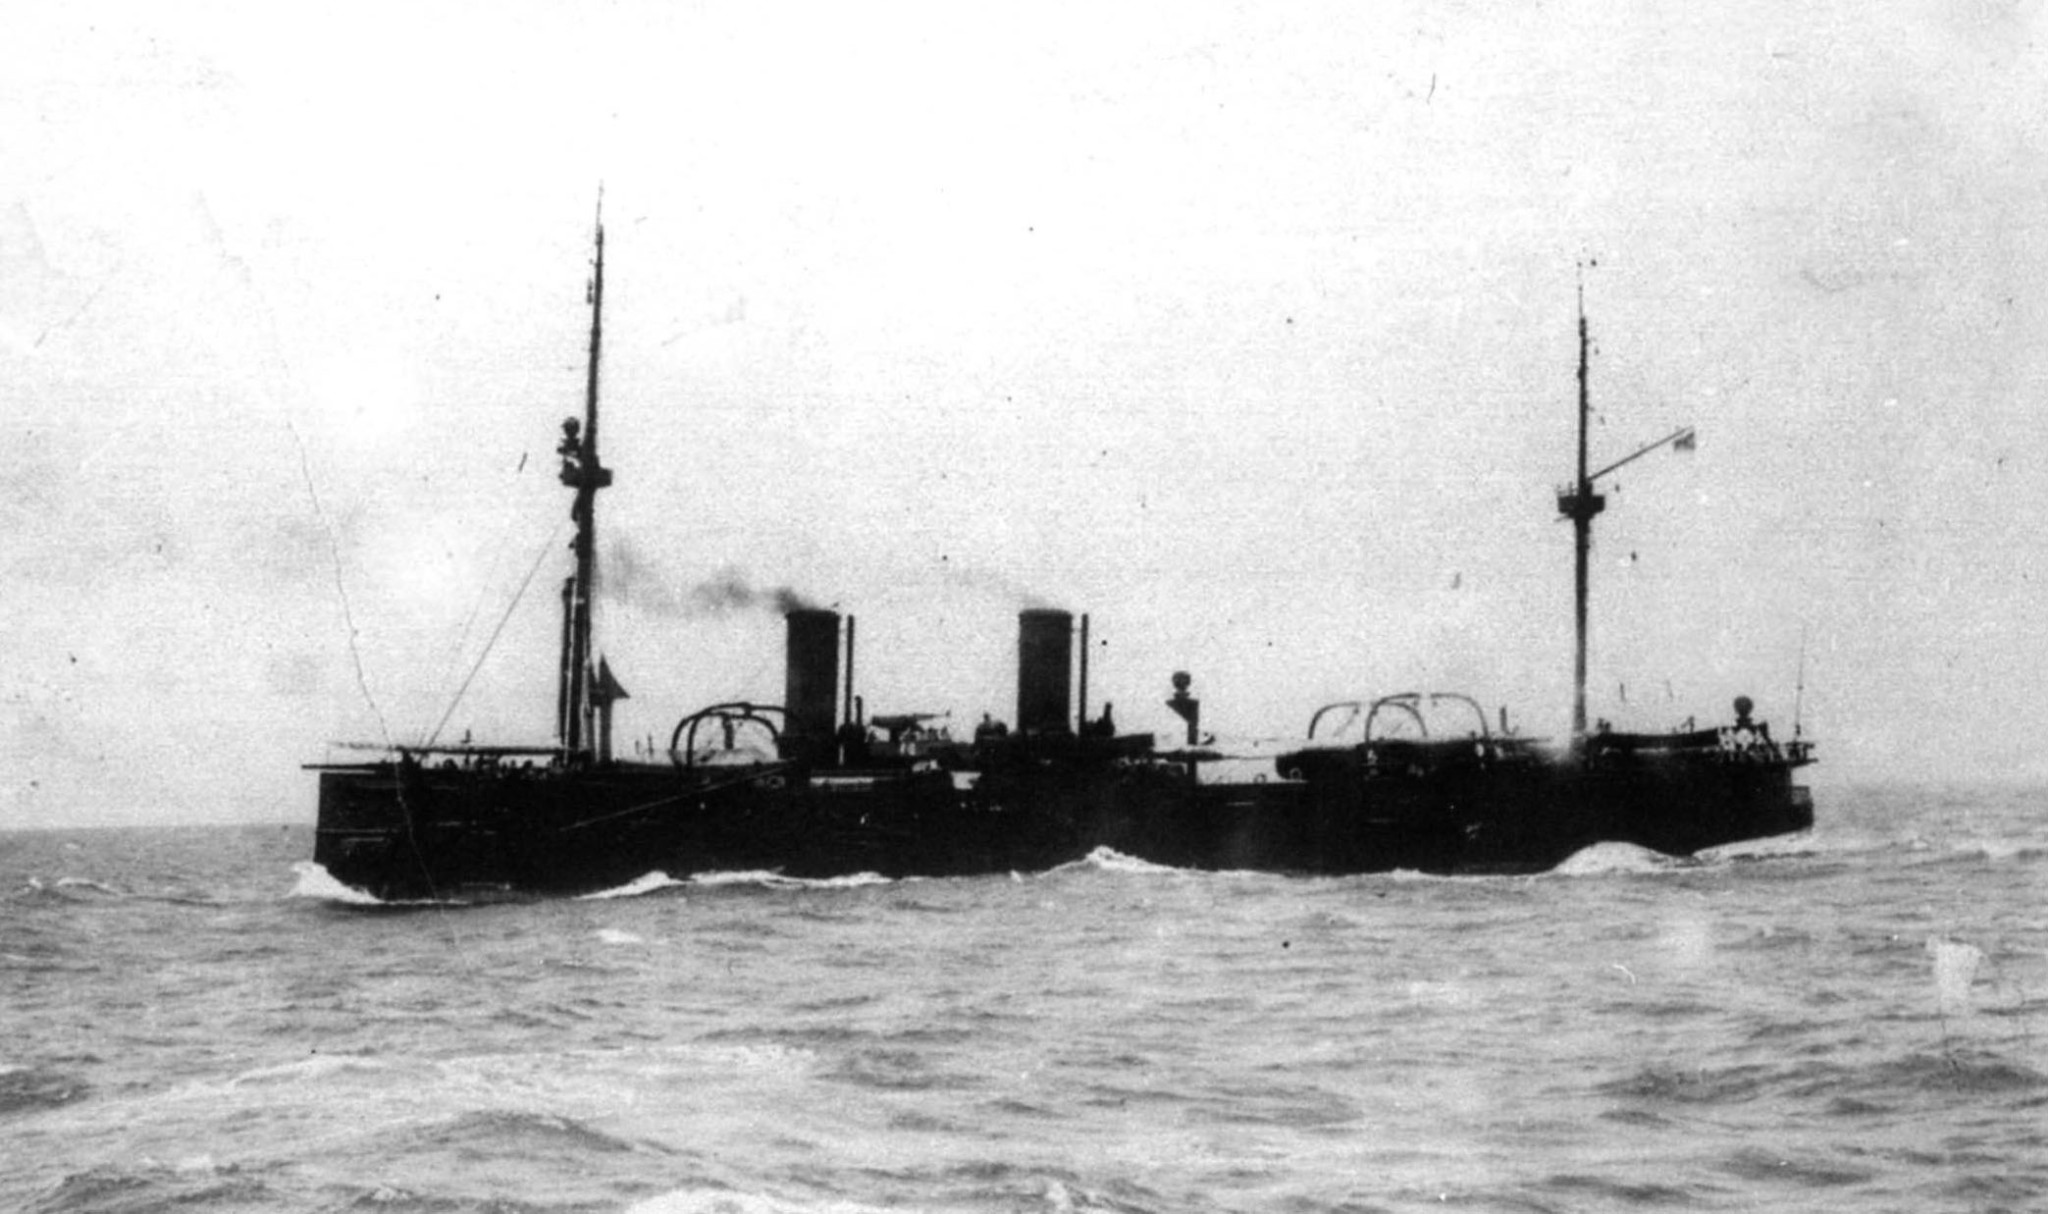 Zdjęcie wykonano na krótko przed bitwą pod Cuszimą, podczas której krążownik zatonął (w nocy w wyniku japońskich ataków torpedowych).